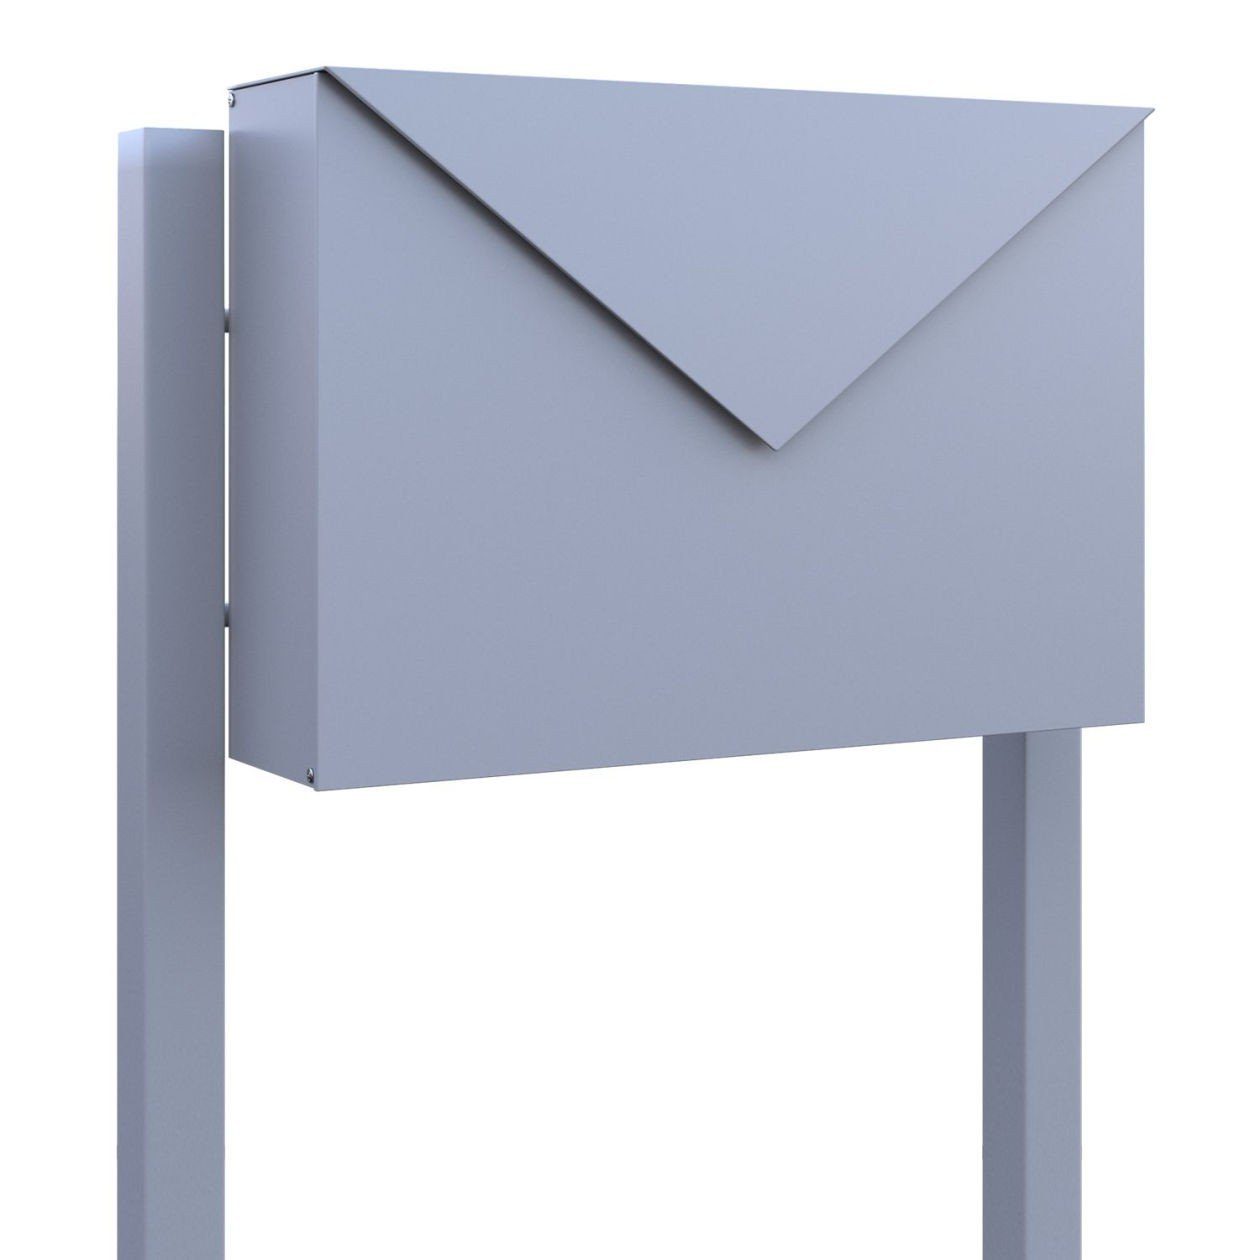 Bravios Briefkasten Standbriefkasten Letter Grau Metallic